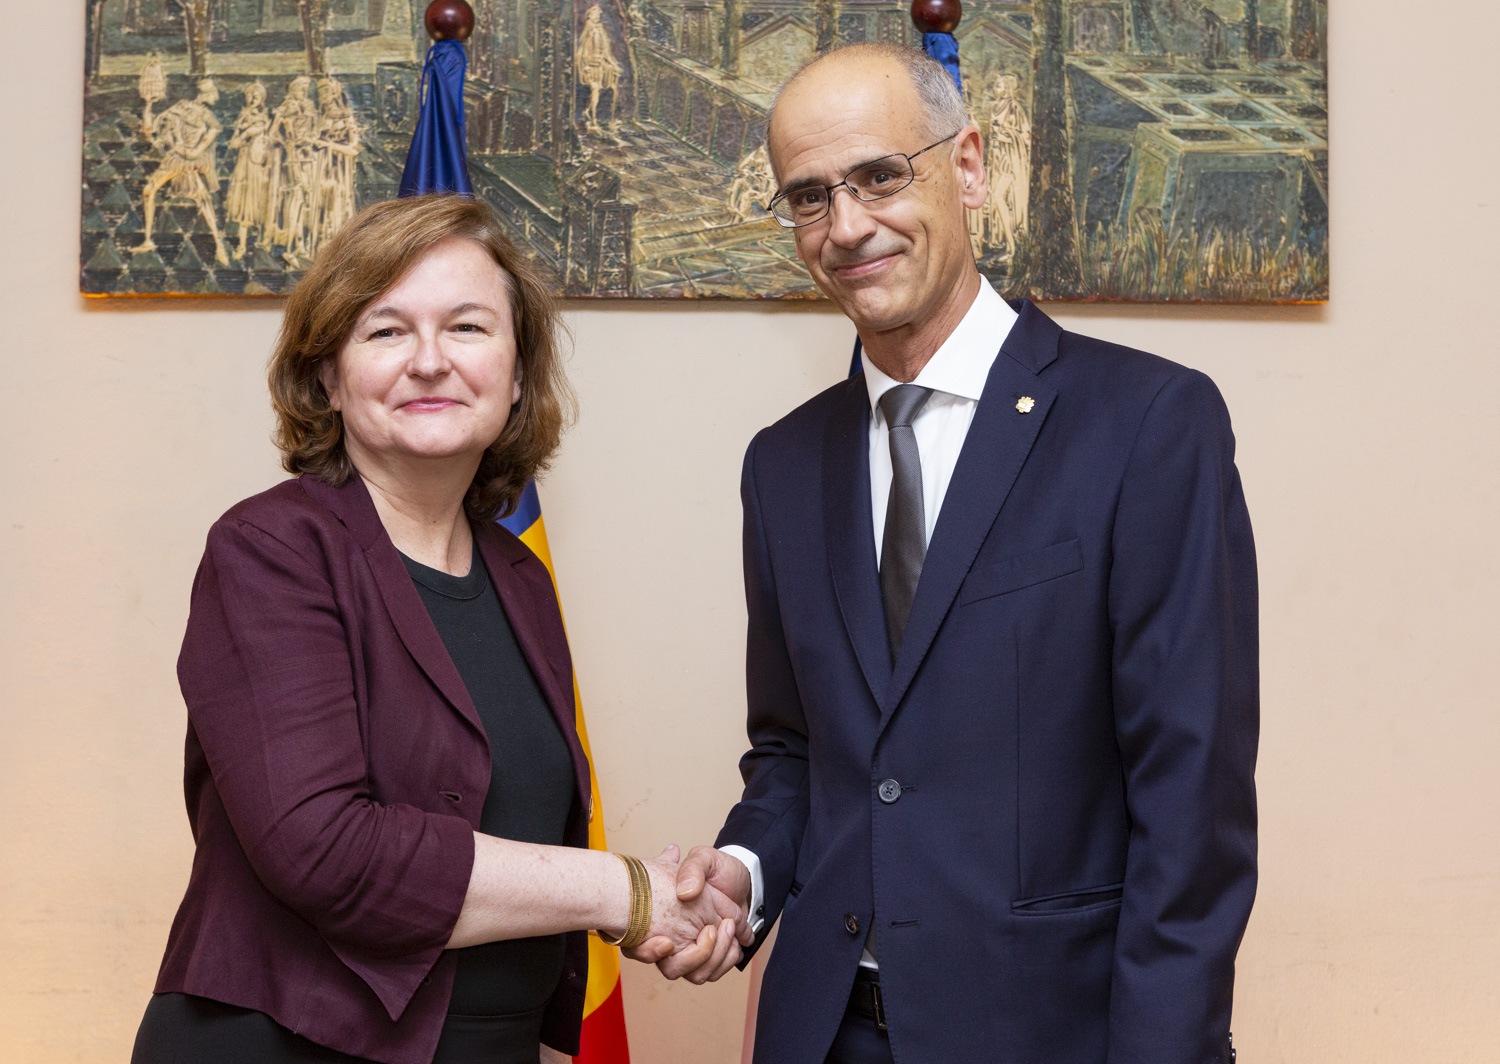 Els negociadors de la UE visitaran Andorra el 28 i 29 de juny amb "bones notícies", augura Martí